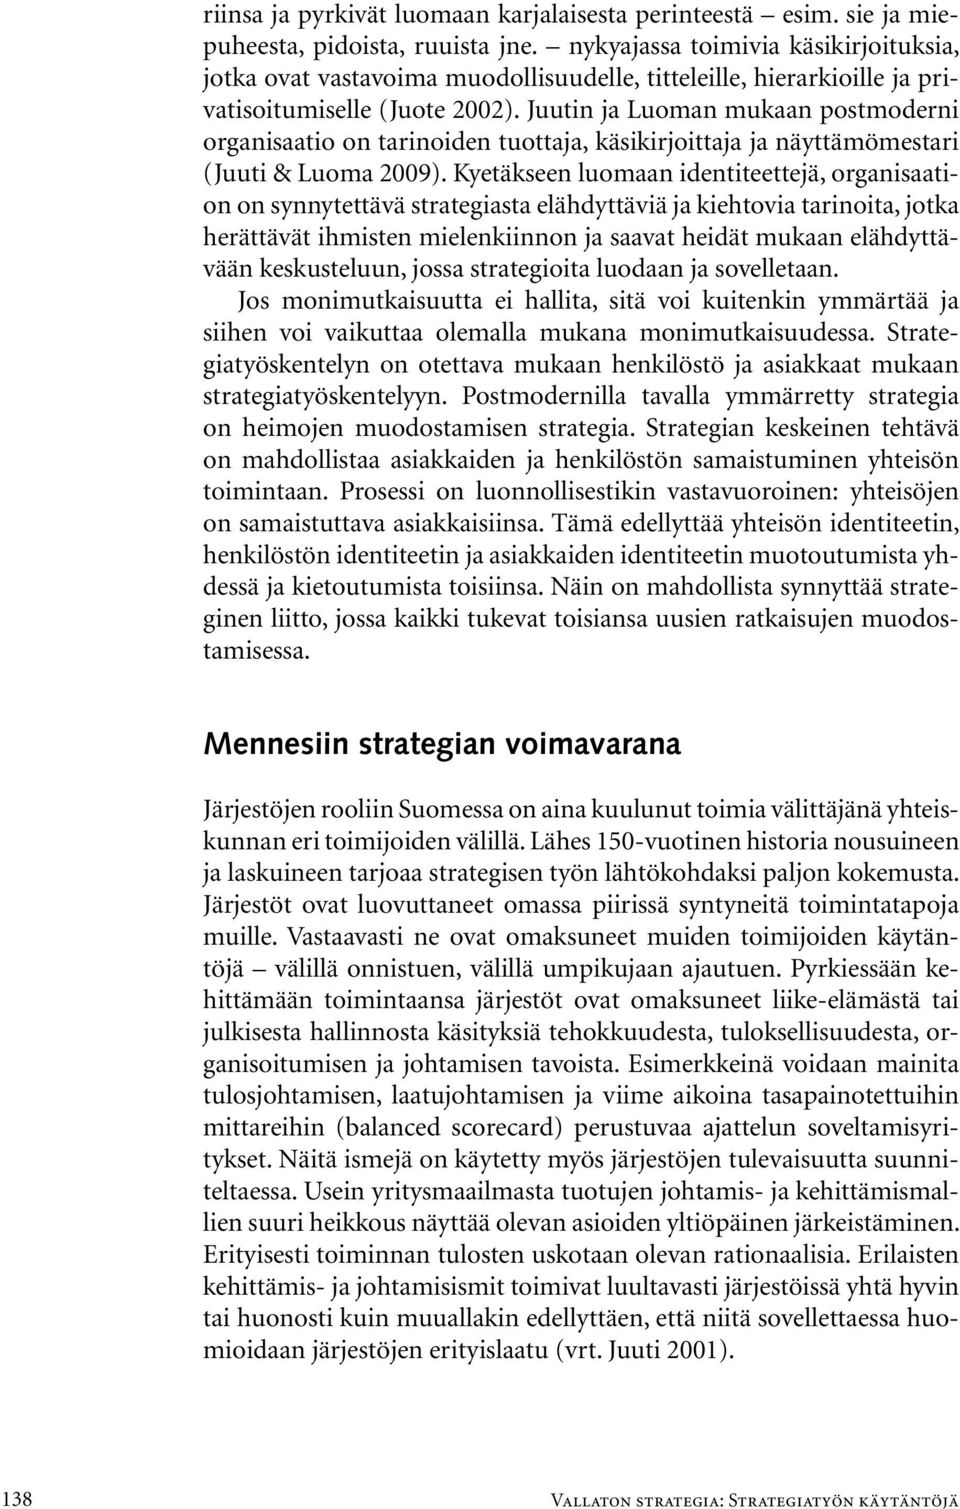 Juutin ja Luoman mukaan postmoderni organisaatio on tarinoiden tuottaja, käsikirjoittaja ja näyttämömestari (Juuti & Luoma 2009).